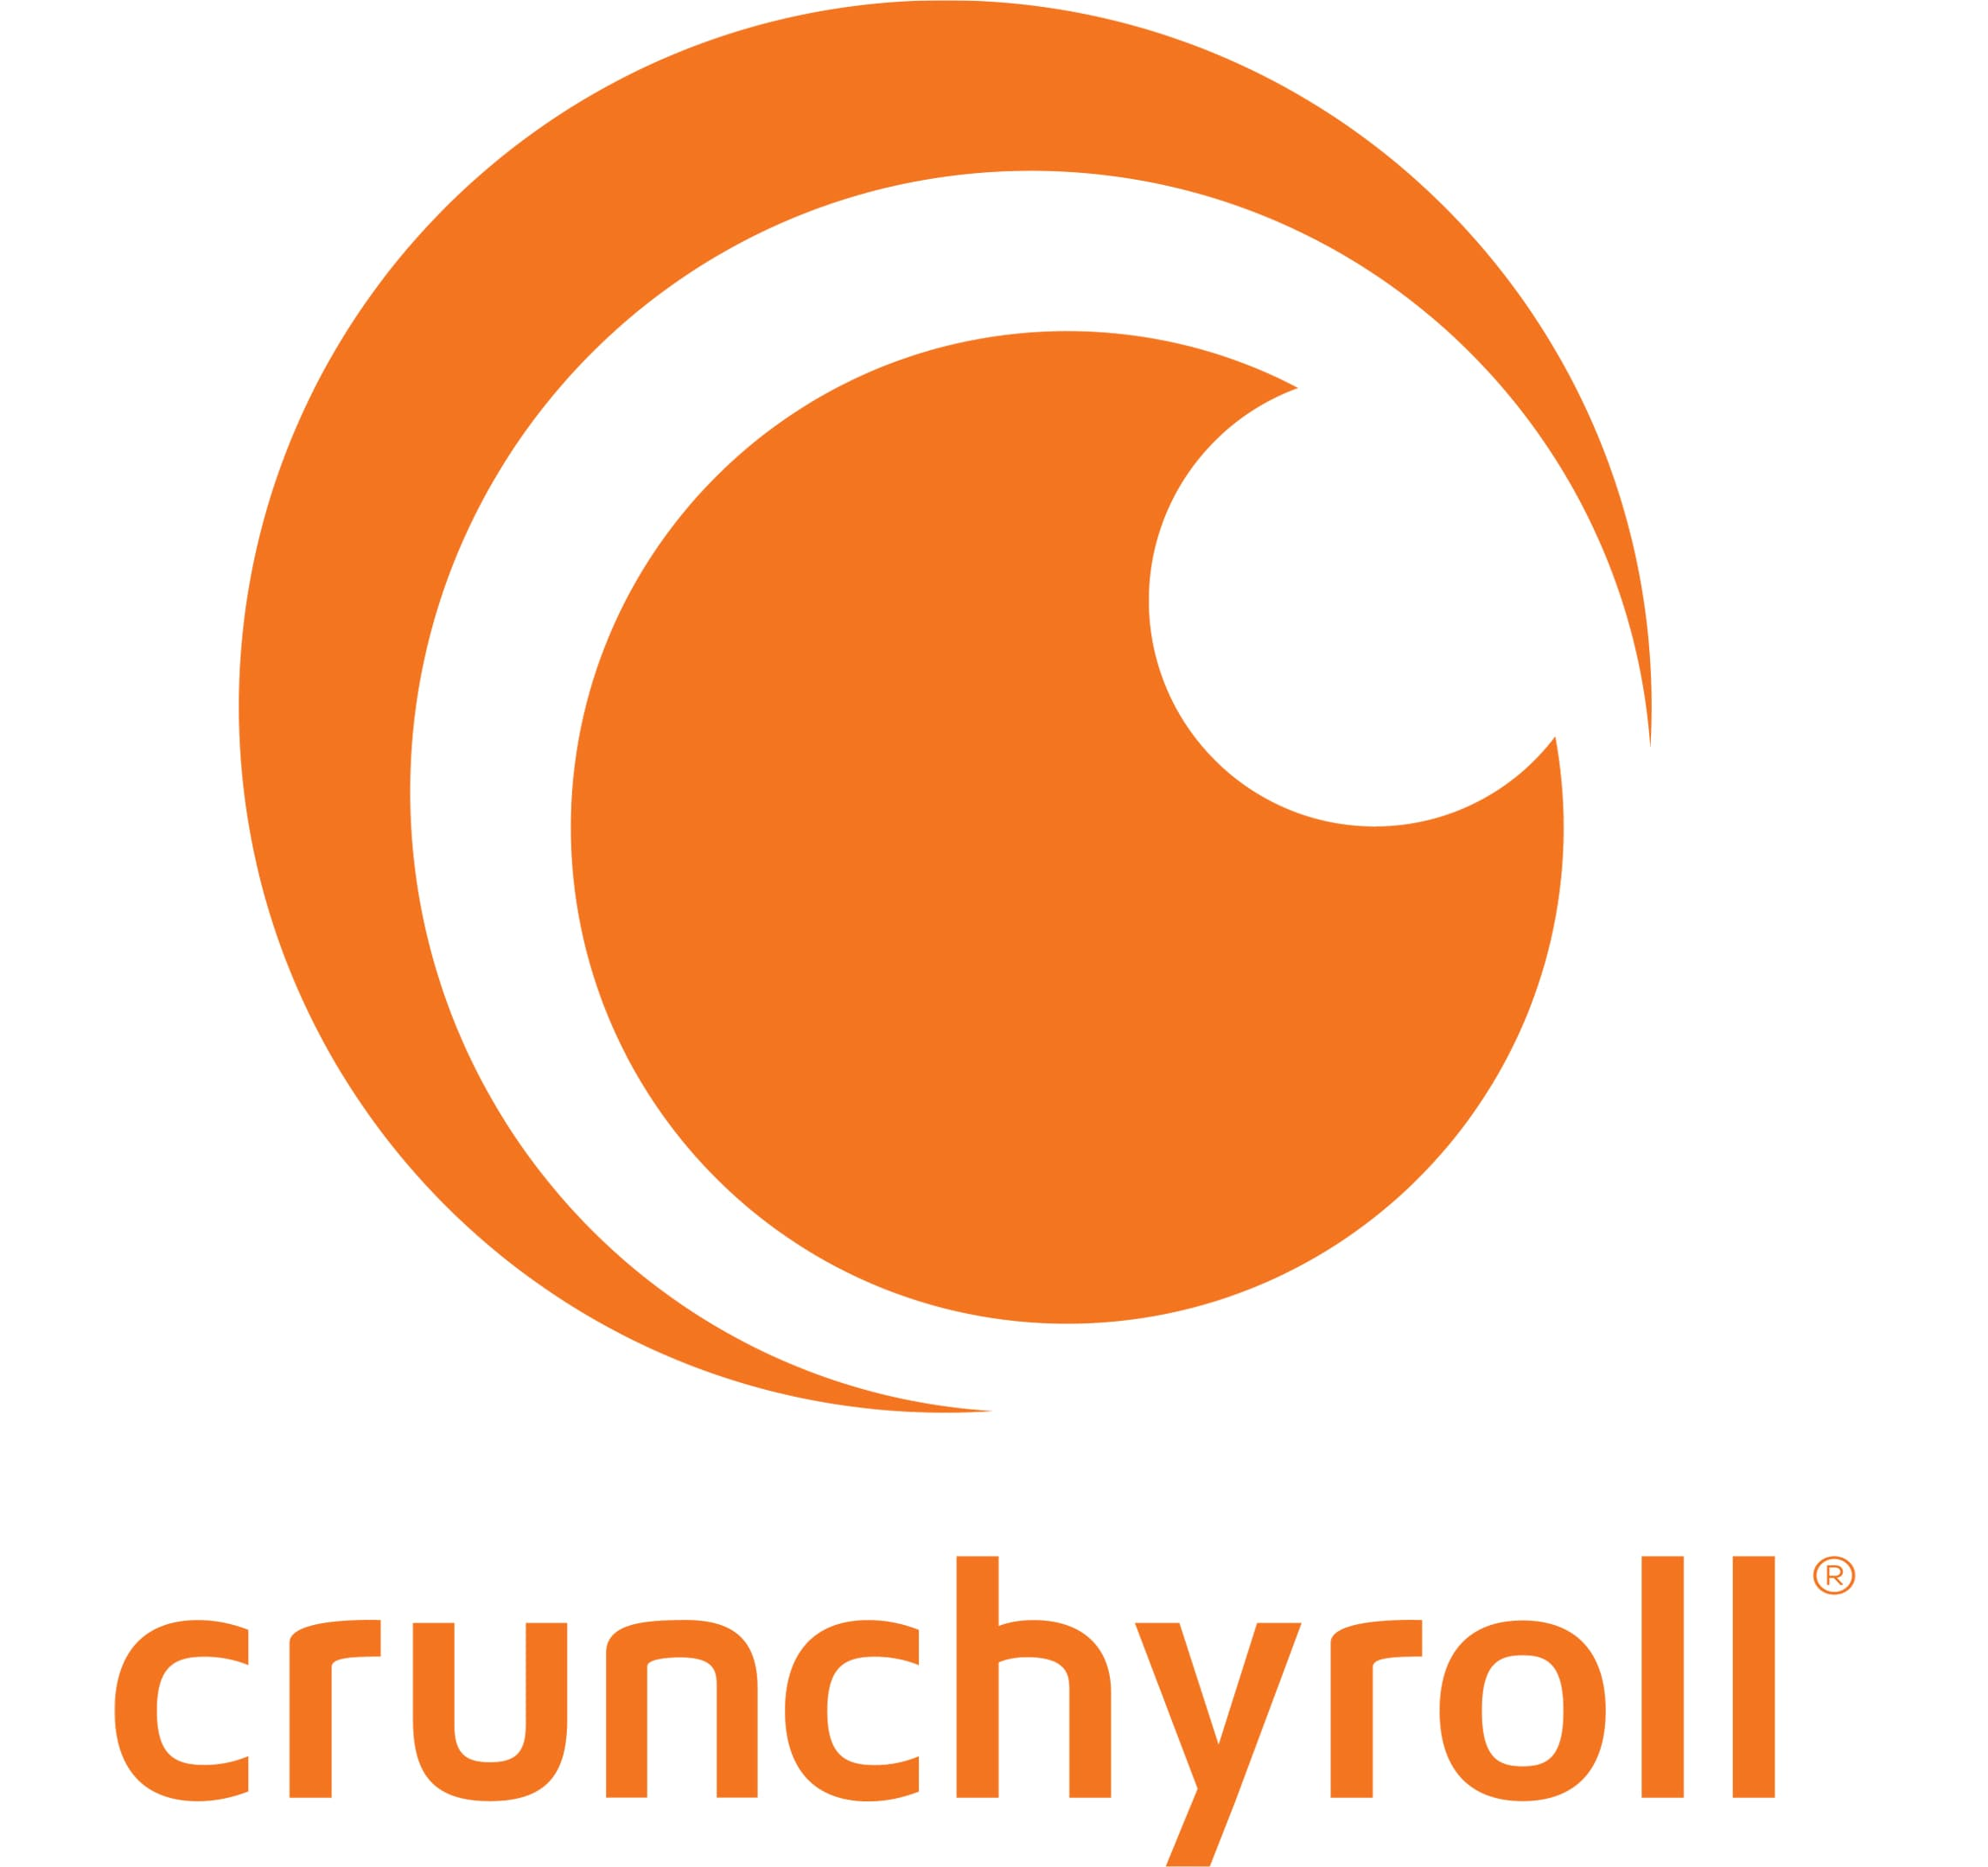 Crunchyroll - Crunchyroll added a new photo.